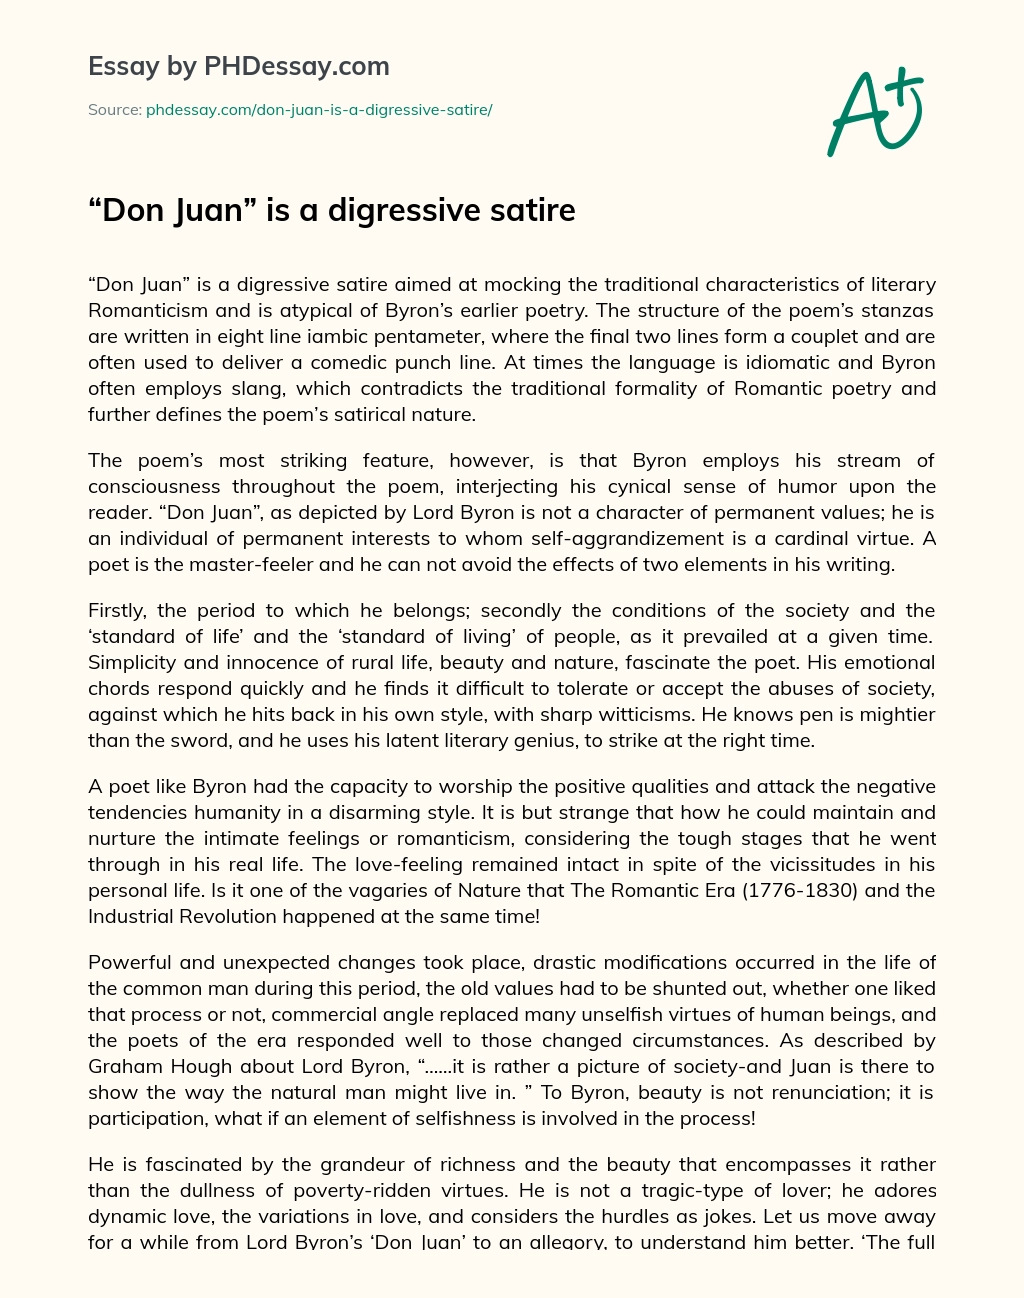 Don Juan is a digressive satire essay